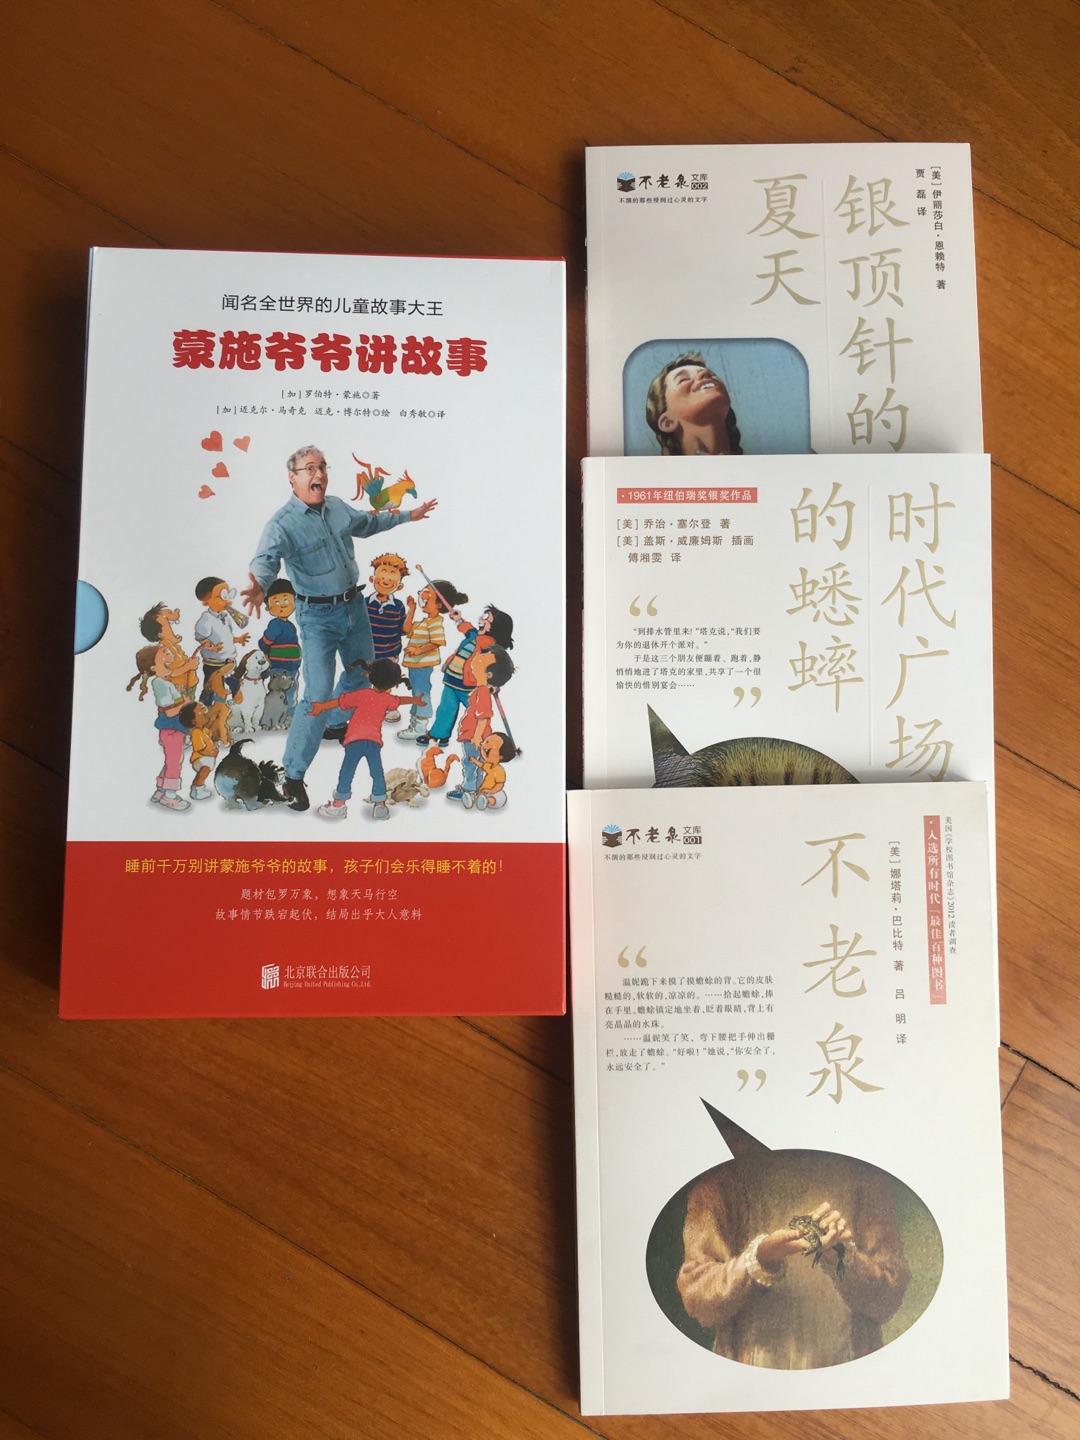 虽然今年双十一图书大促活动不是很给力，但还是买了一堆，这套书是中英文双语的，翻译的很好，读起来朗朗上口，经常给孩子念书，自己的朗诵水平都提高了不少